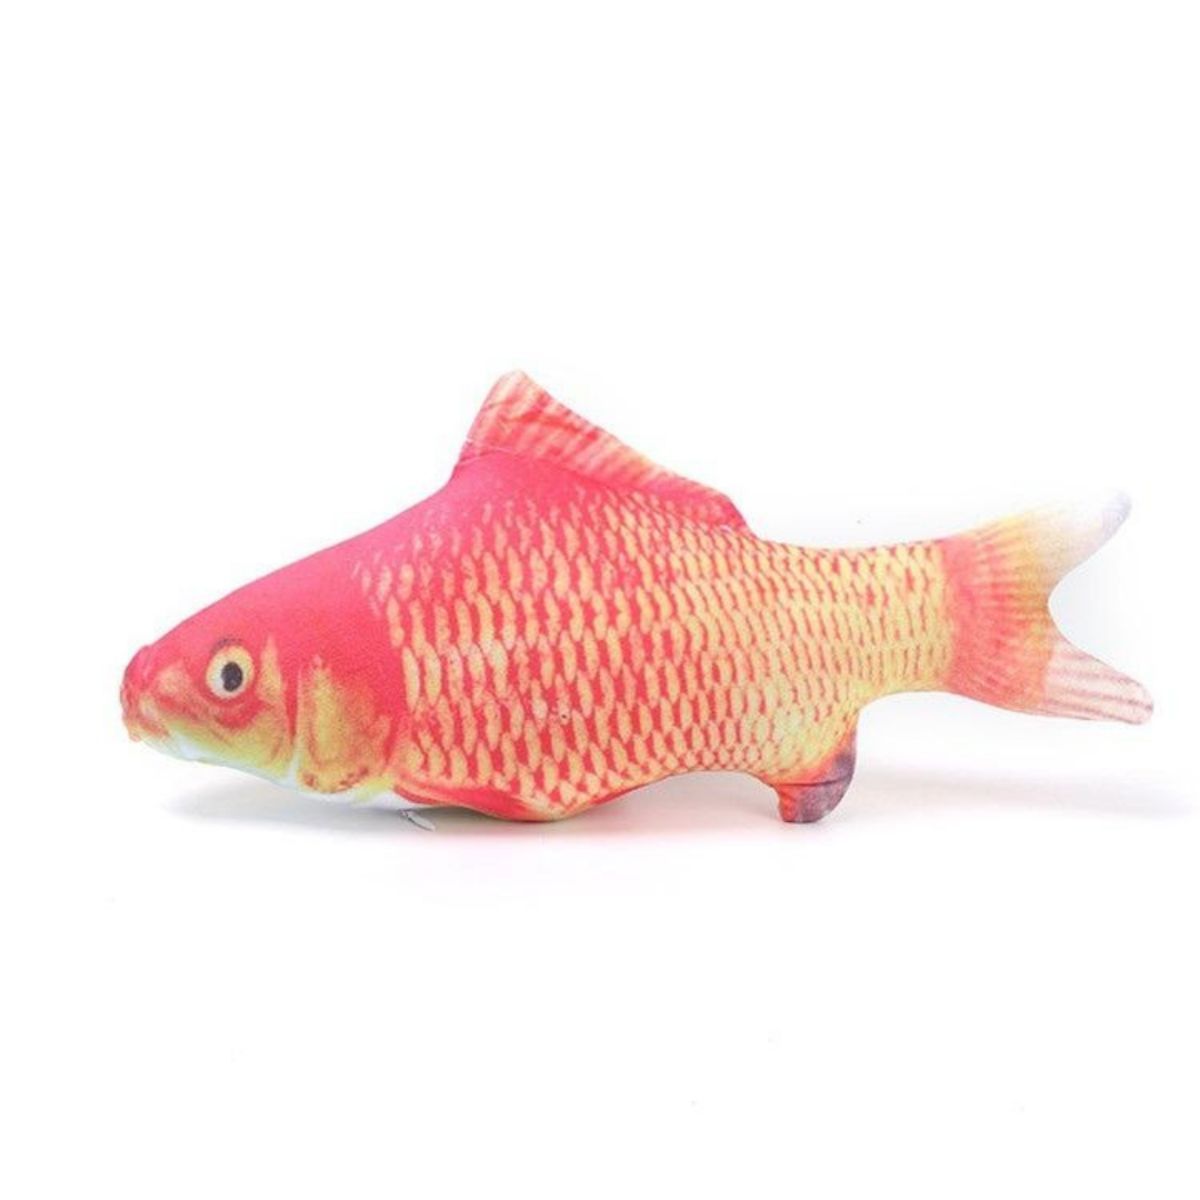 Floppy fish dog toy Red fish